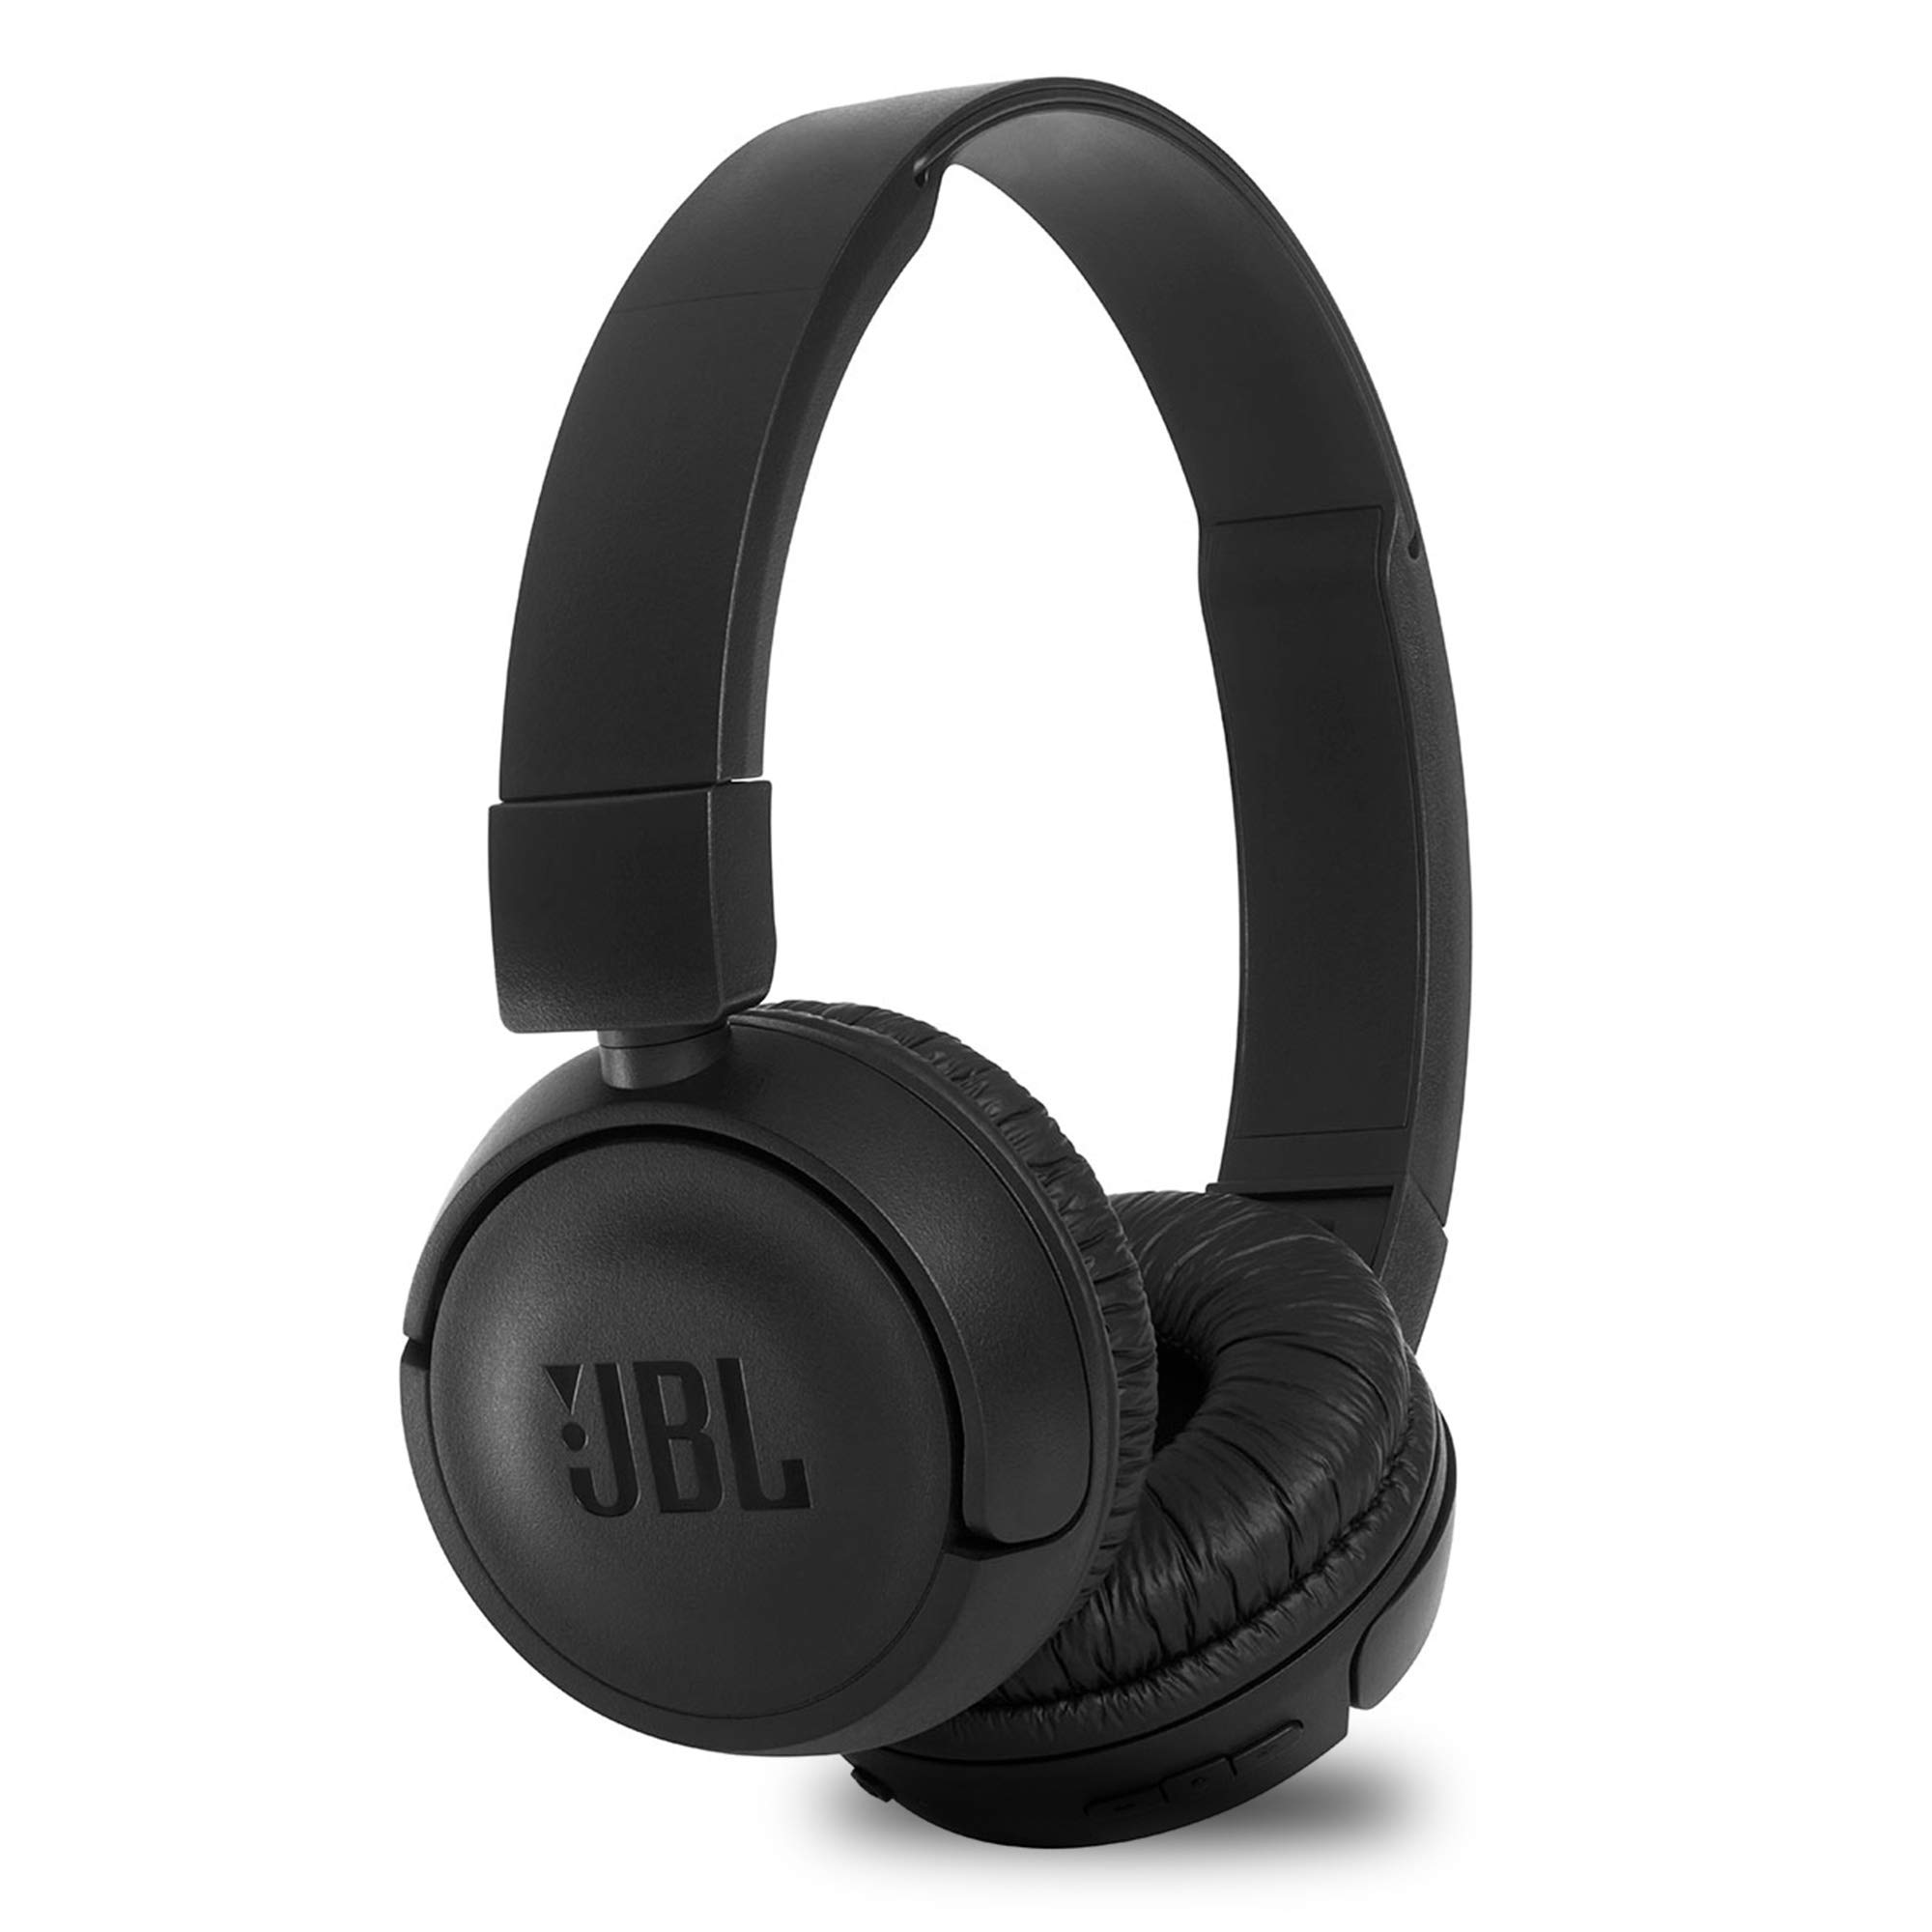 JBL Bezprzewodowe słuchawki nauszne T460BT Extra Bass z 11-godzinnym czasem odtwarzania i mikrofonem – czarne